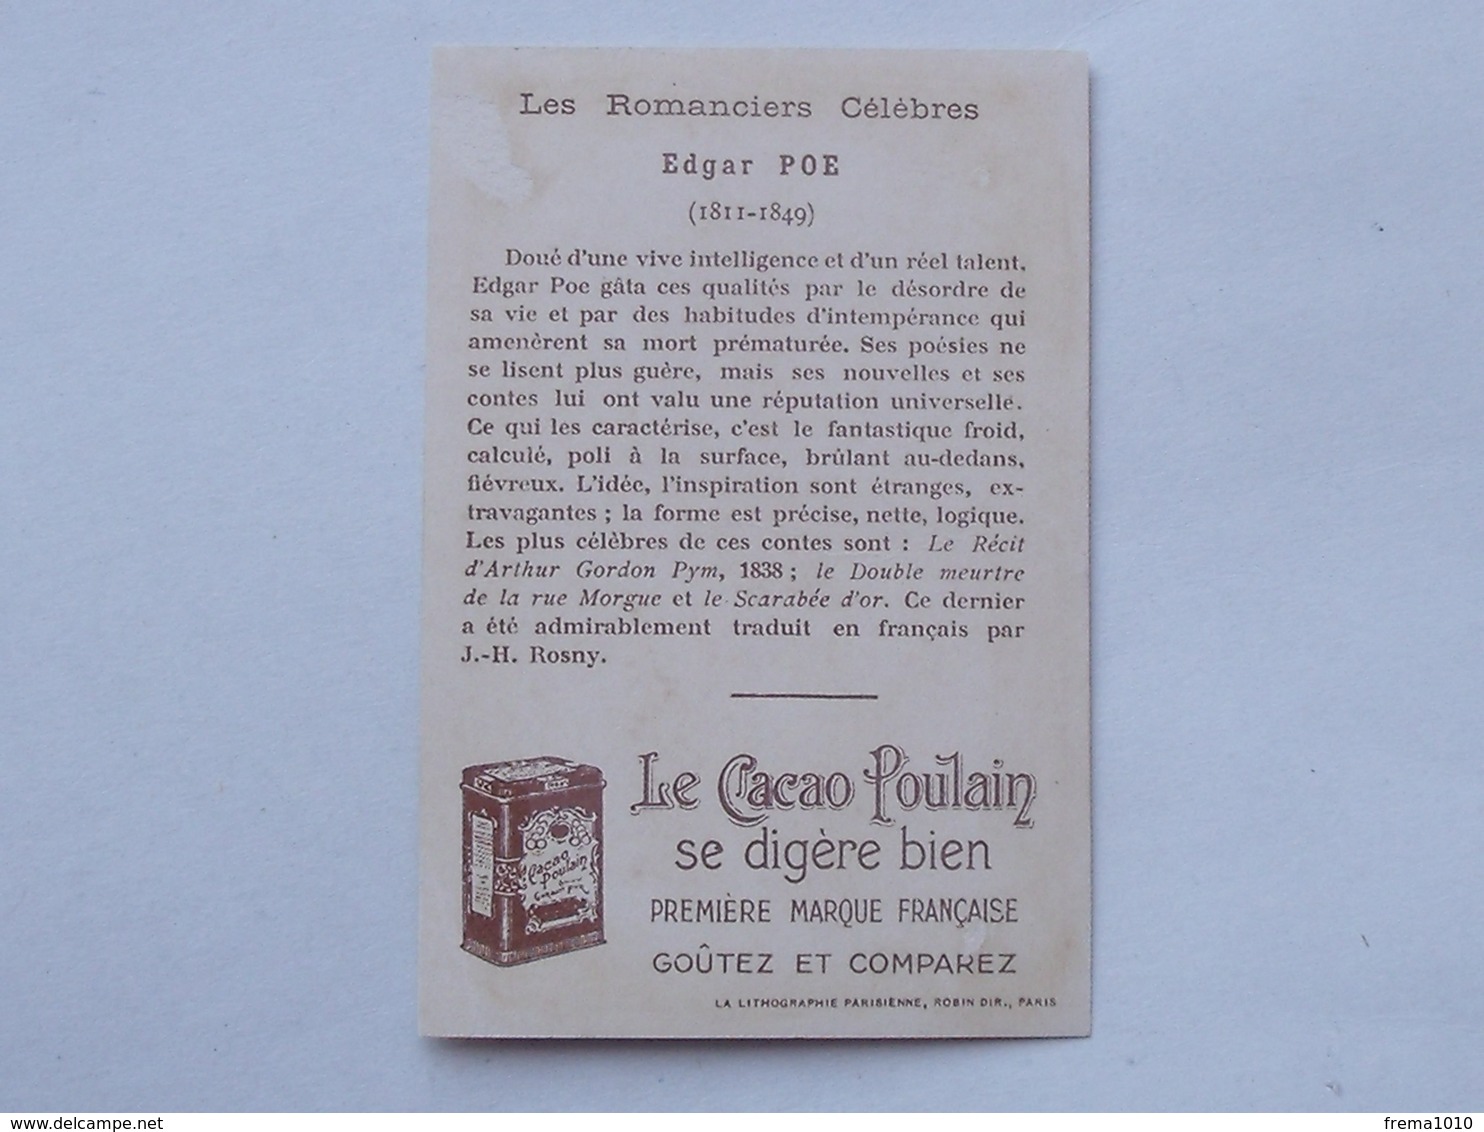 CHROMO Chocolat POULAIN ORANGE Didactique: Edgar Allan POE Série Romanciers Célèbres - BALTIMORE Le Scarabée D'Or - Poulain